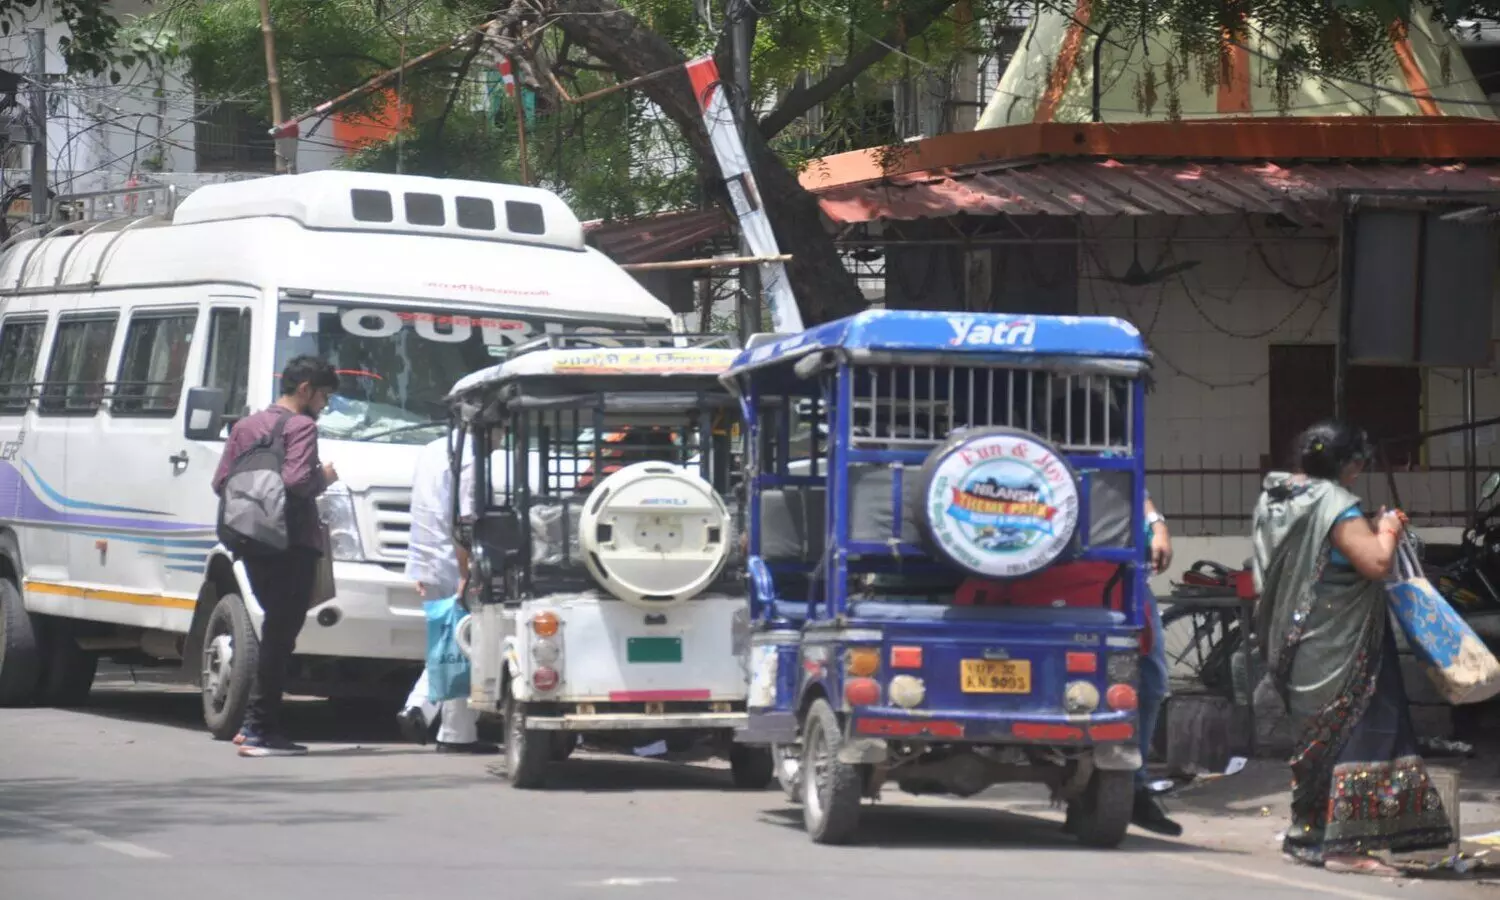 Lucknow News: चौराहों से हटाया तो गली-नुक्कड़ में बनाया बसेरा, इस तरह डग्गामार वाहन तक पहुंच रही सवारी